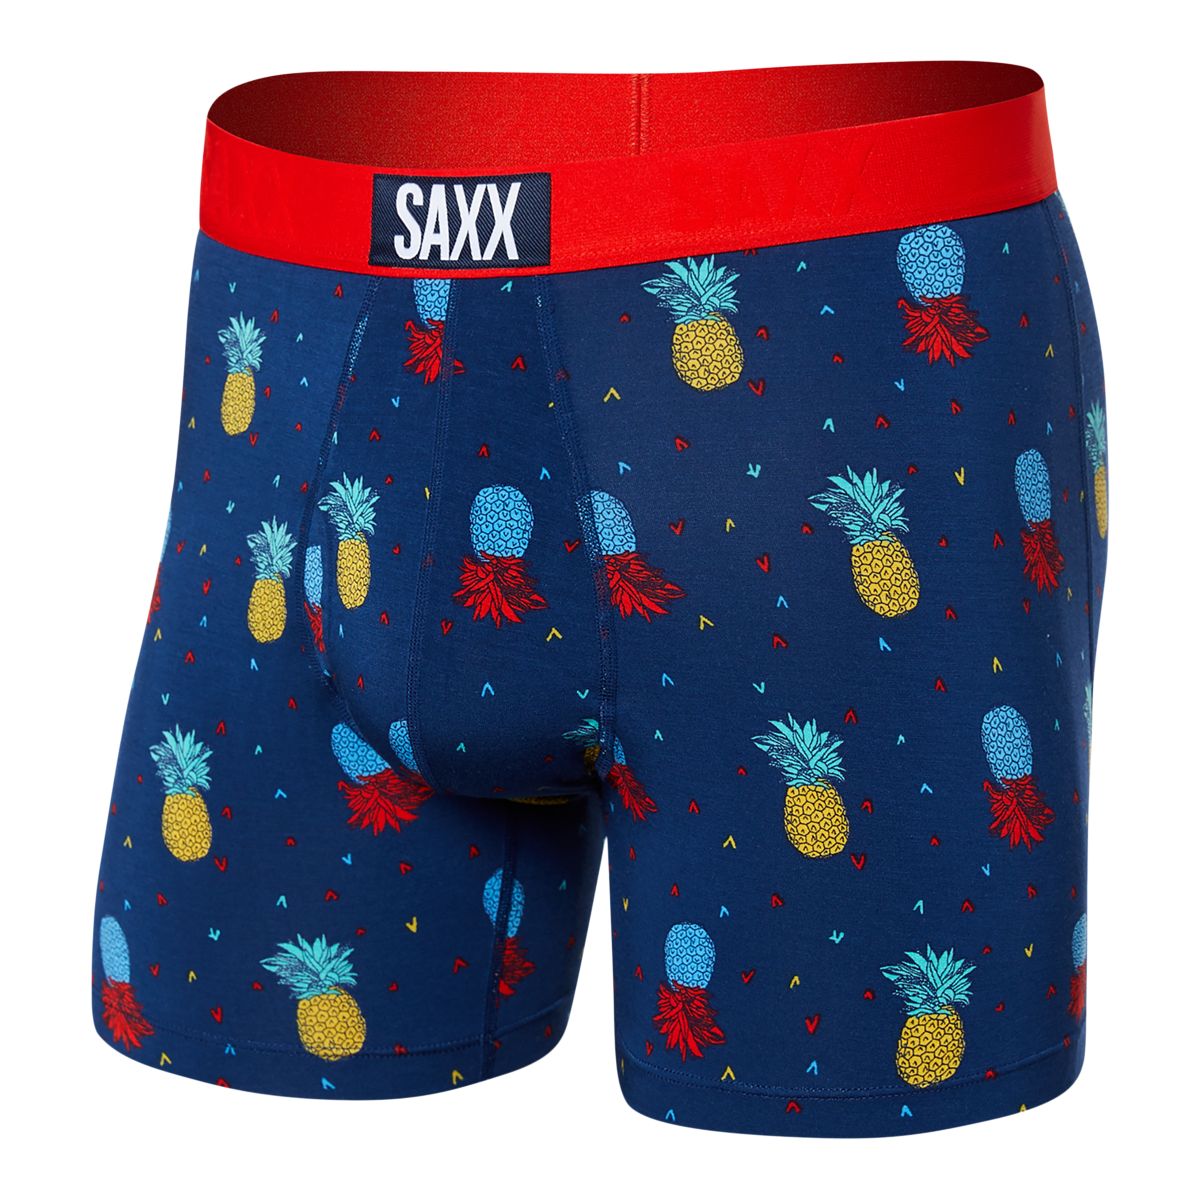 SAXX Men's Droptemp Cotton Boxer Brief